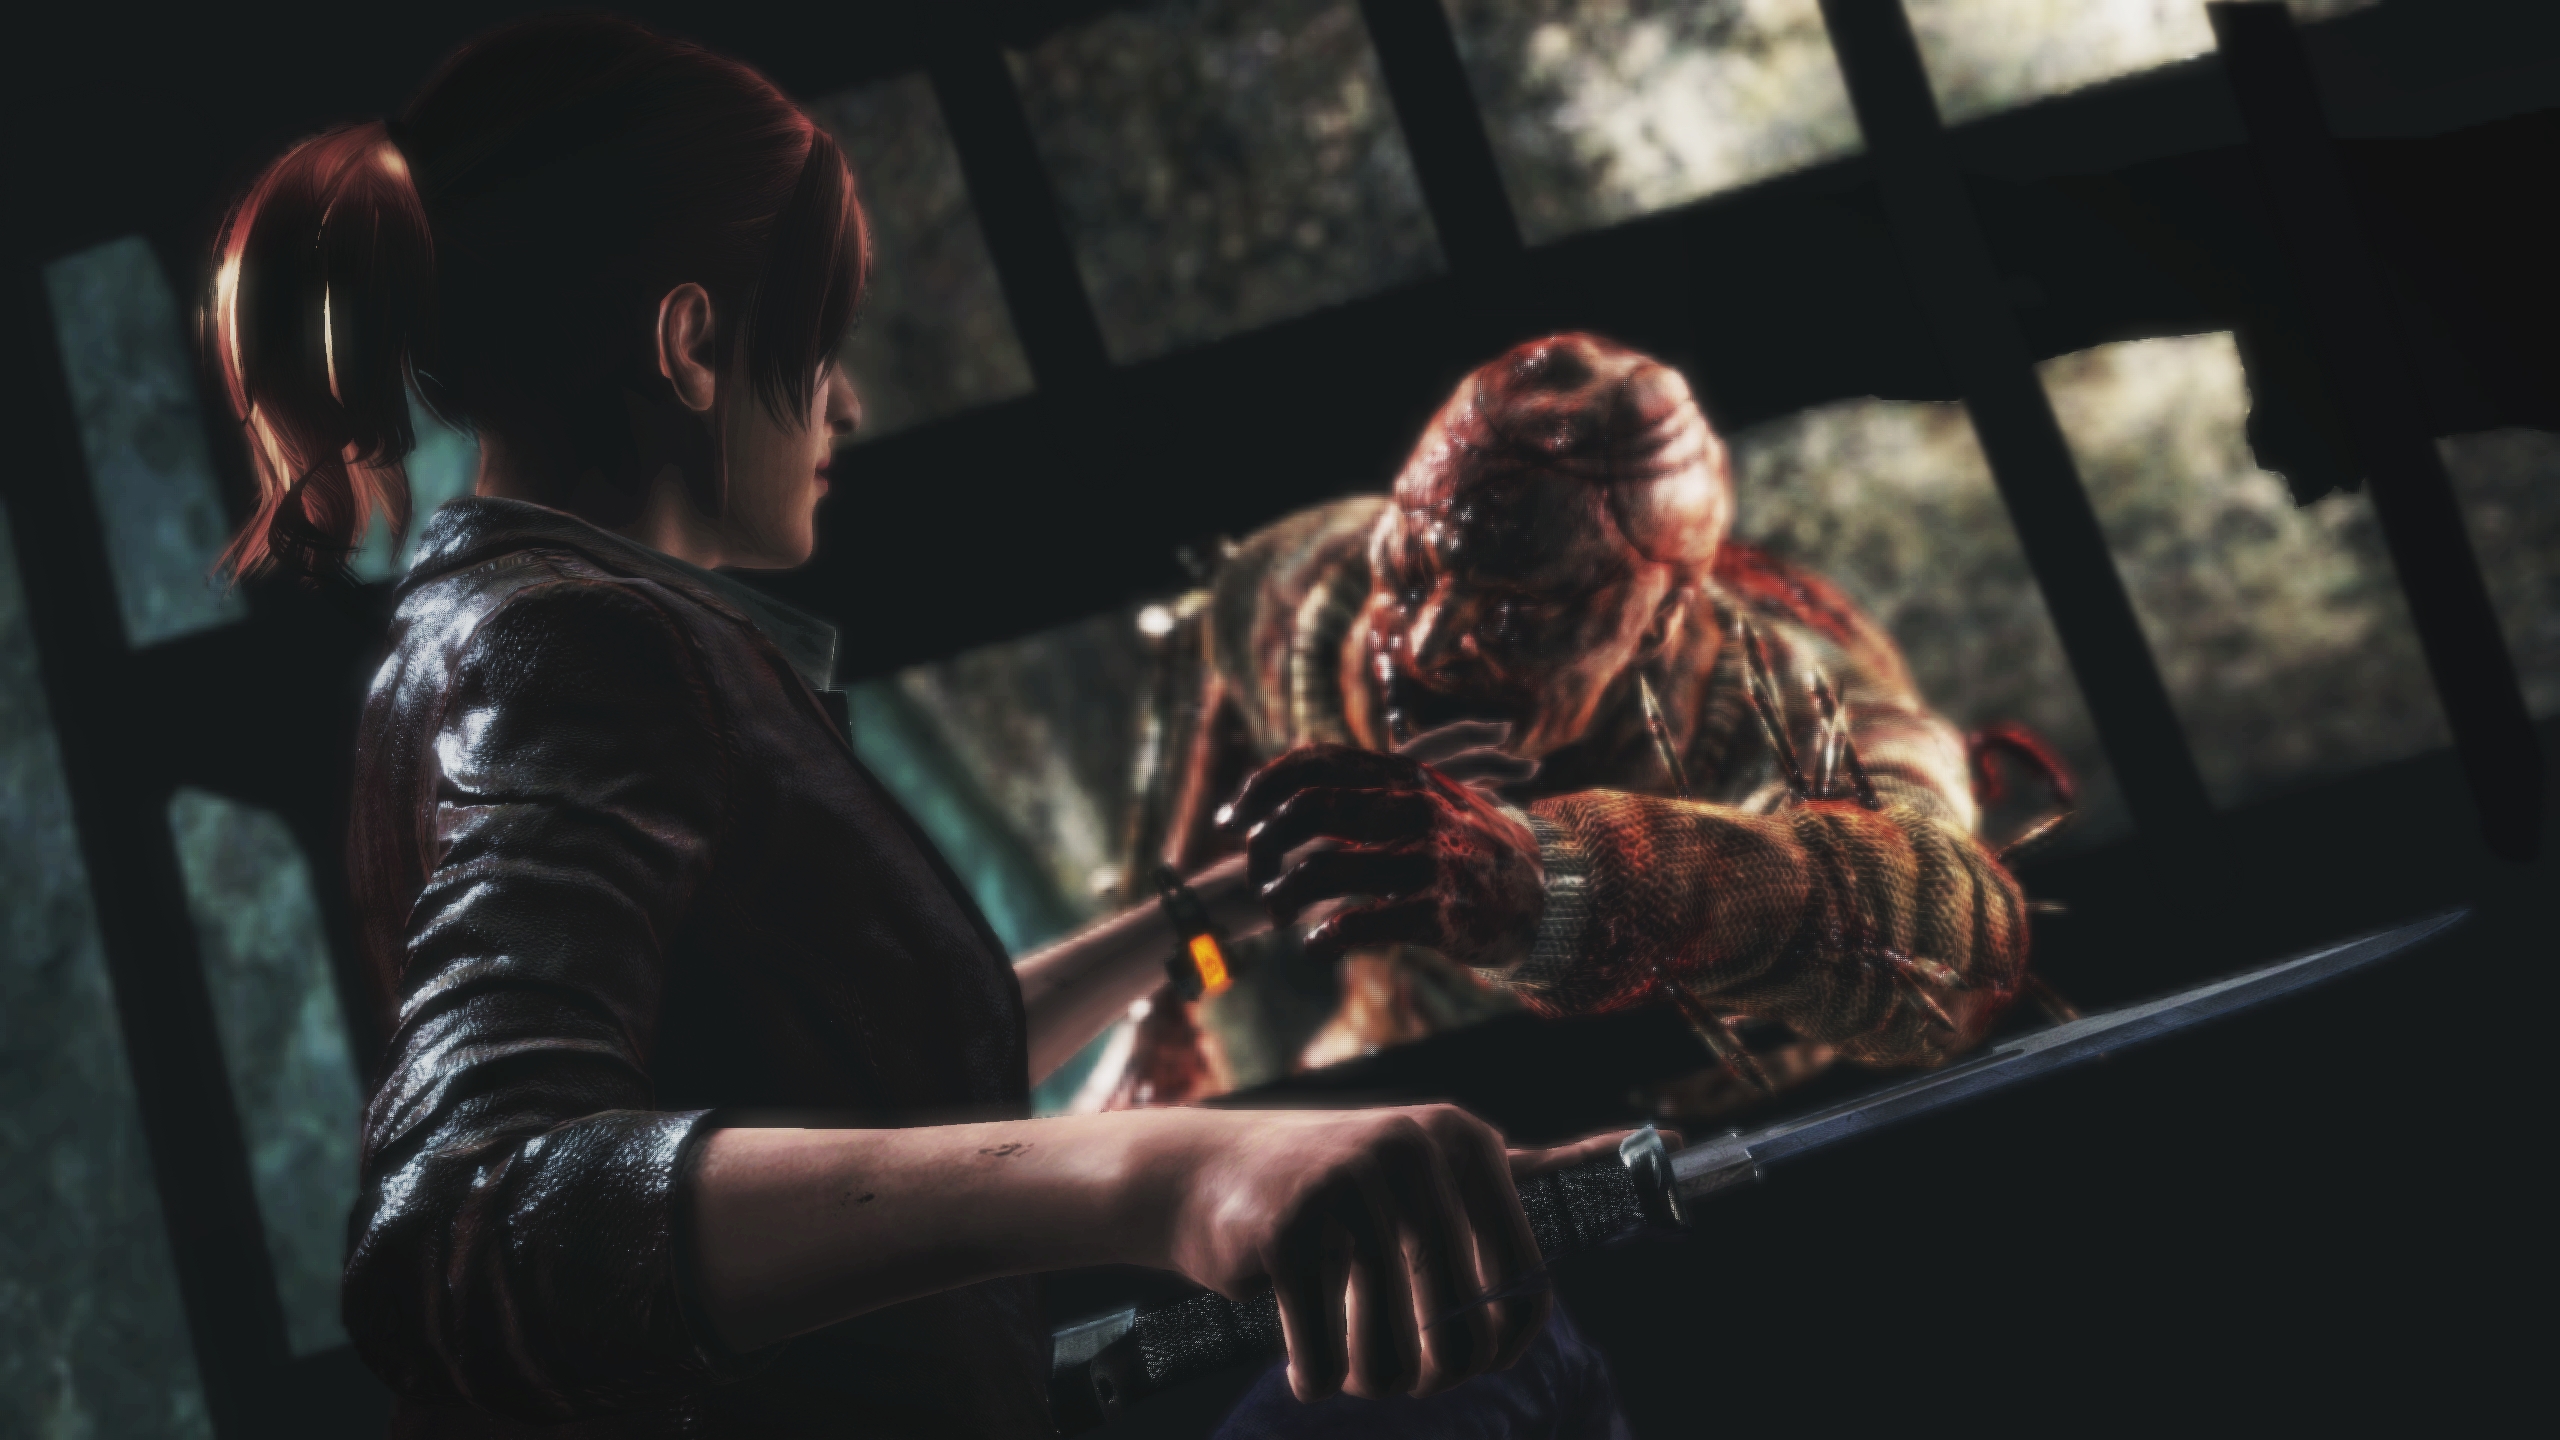 Resident Evil Revelations 2 - PS4 - ZEUS GAMES - A única loja Gamer de BH!